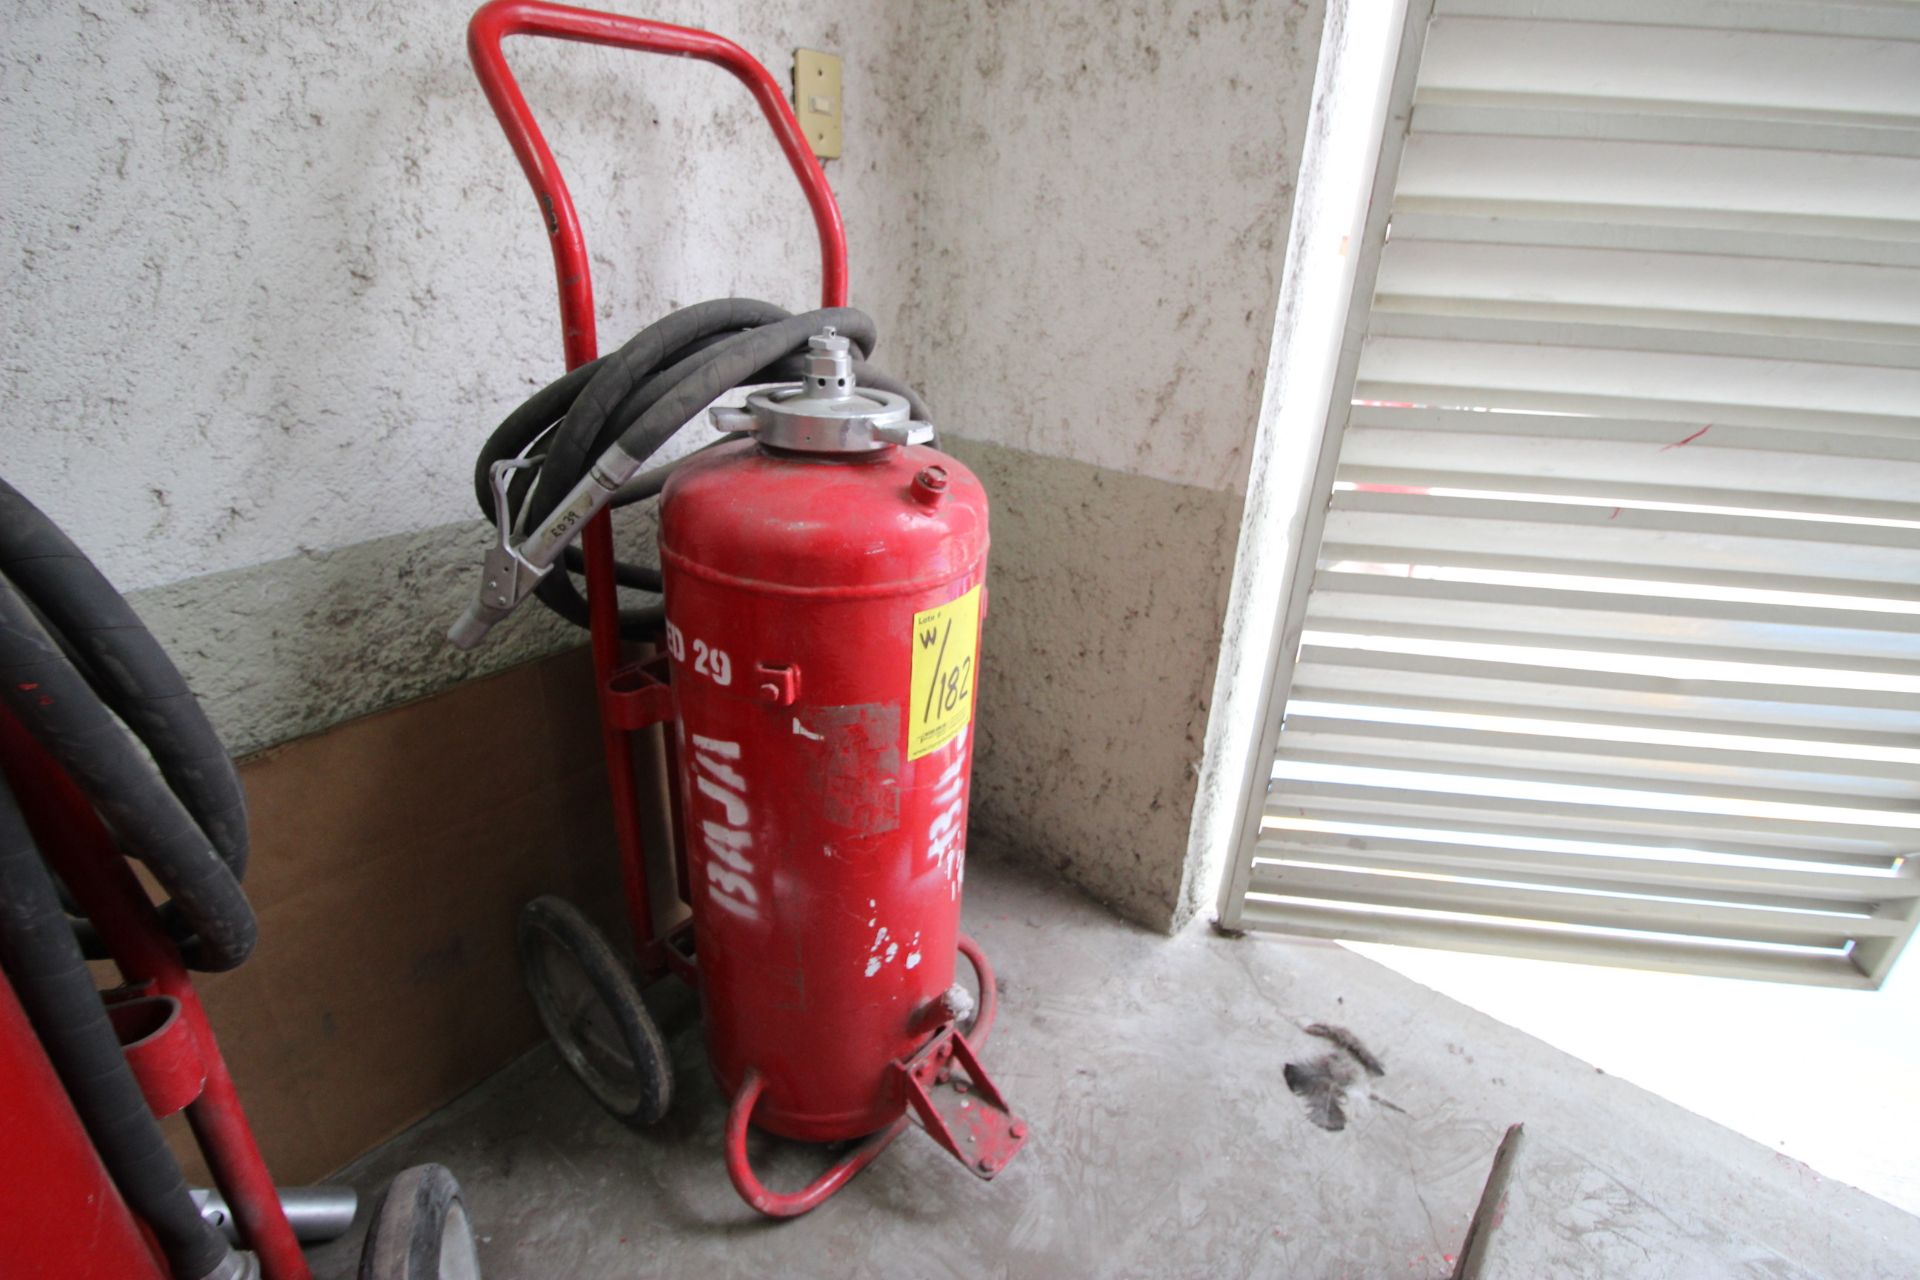 Dos extintores movil con capacidad de 20 LTS - Image 4 of 12